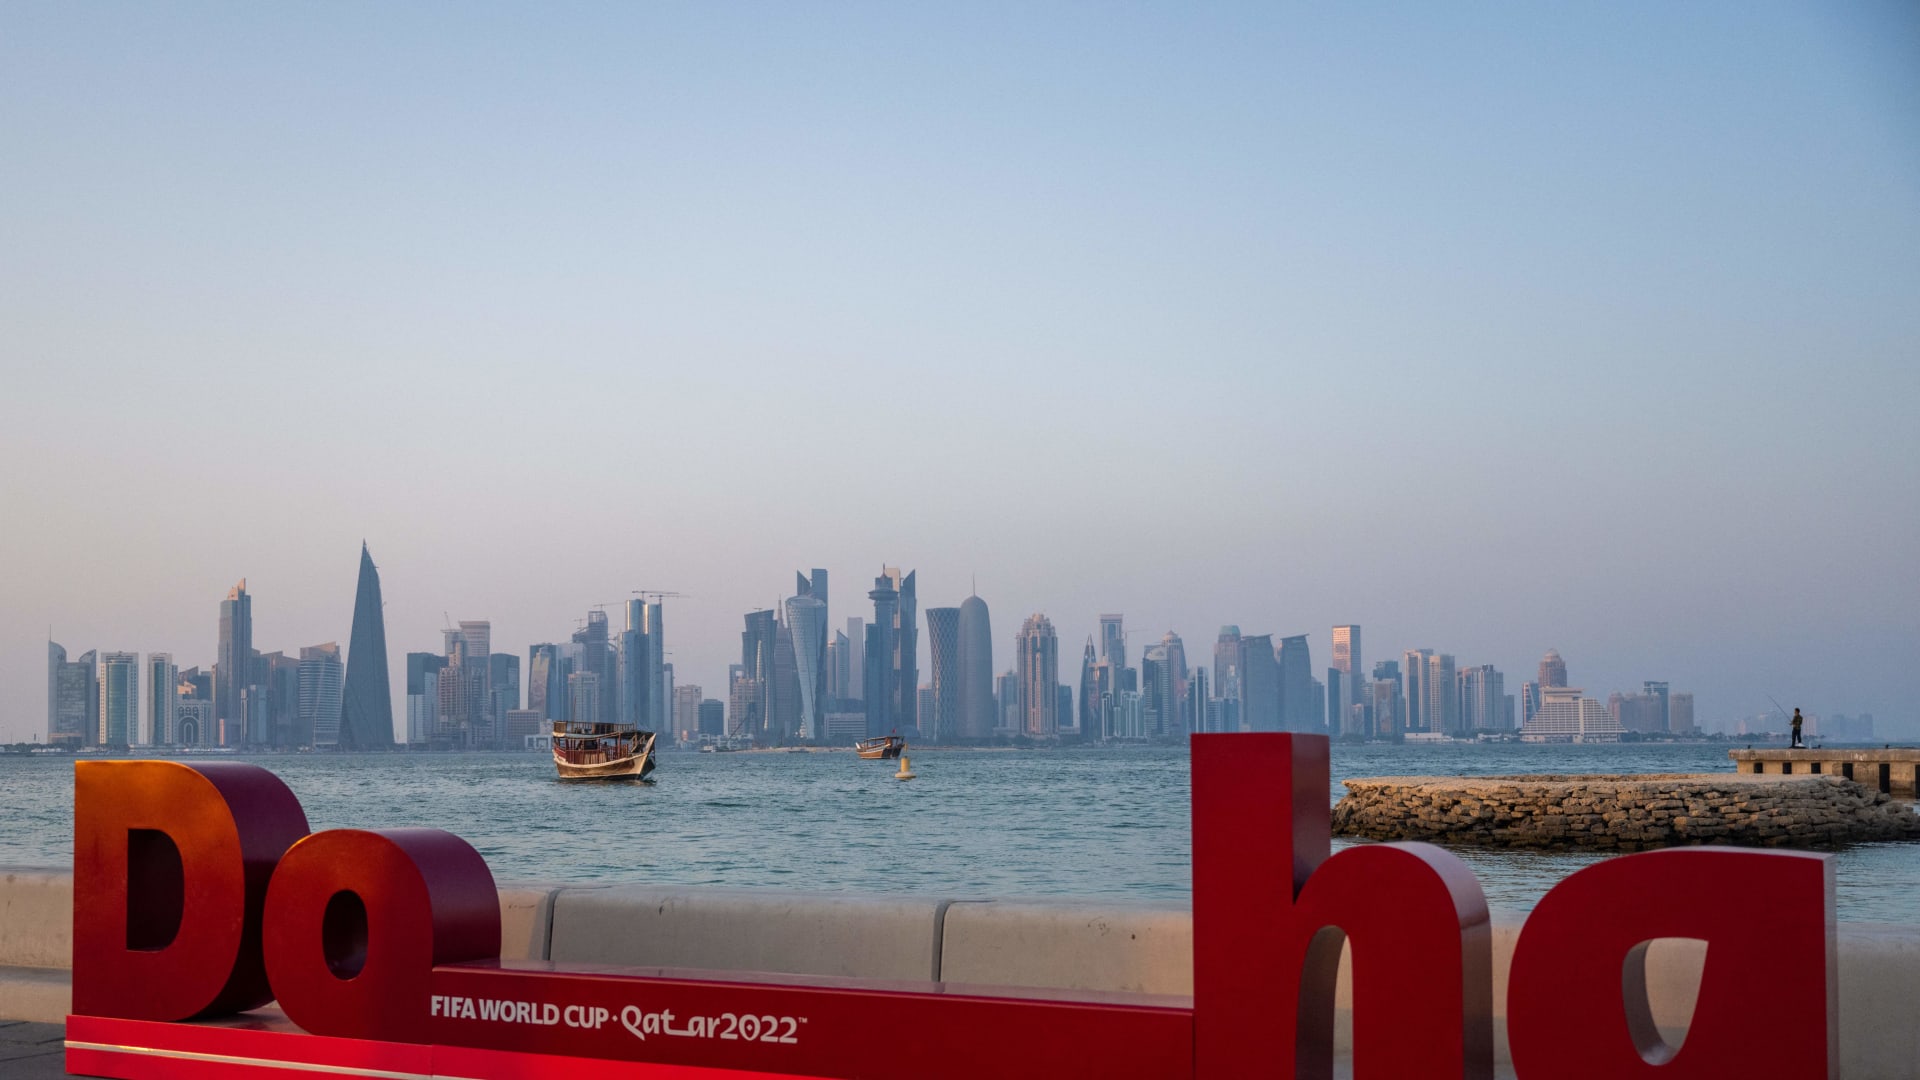 هيومن رايتس ووتش: أفراد مجتمع الميم في قطر تعرضوا للاعتقال وسوء المعاملة قبل كأس العالم